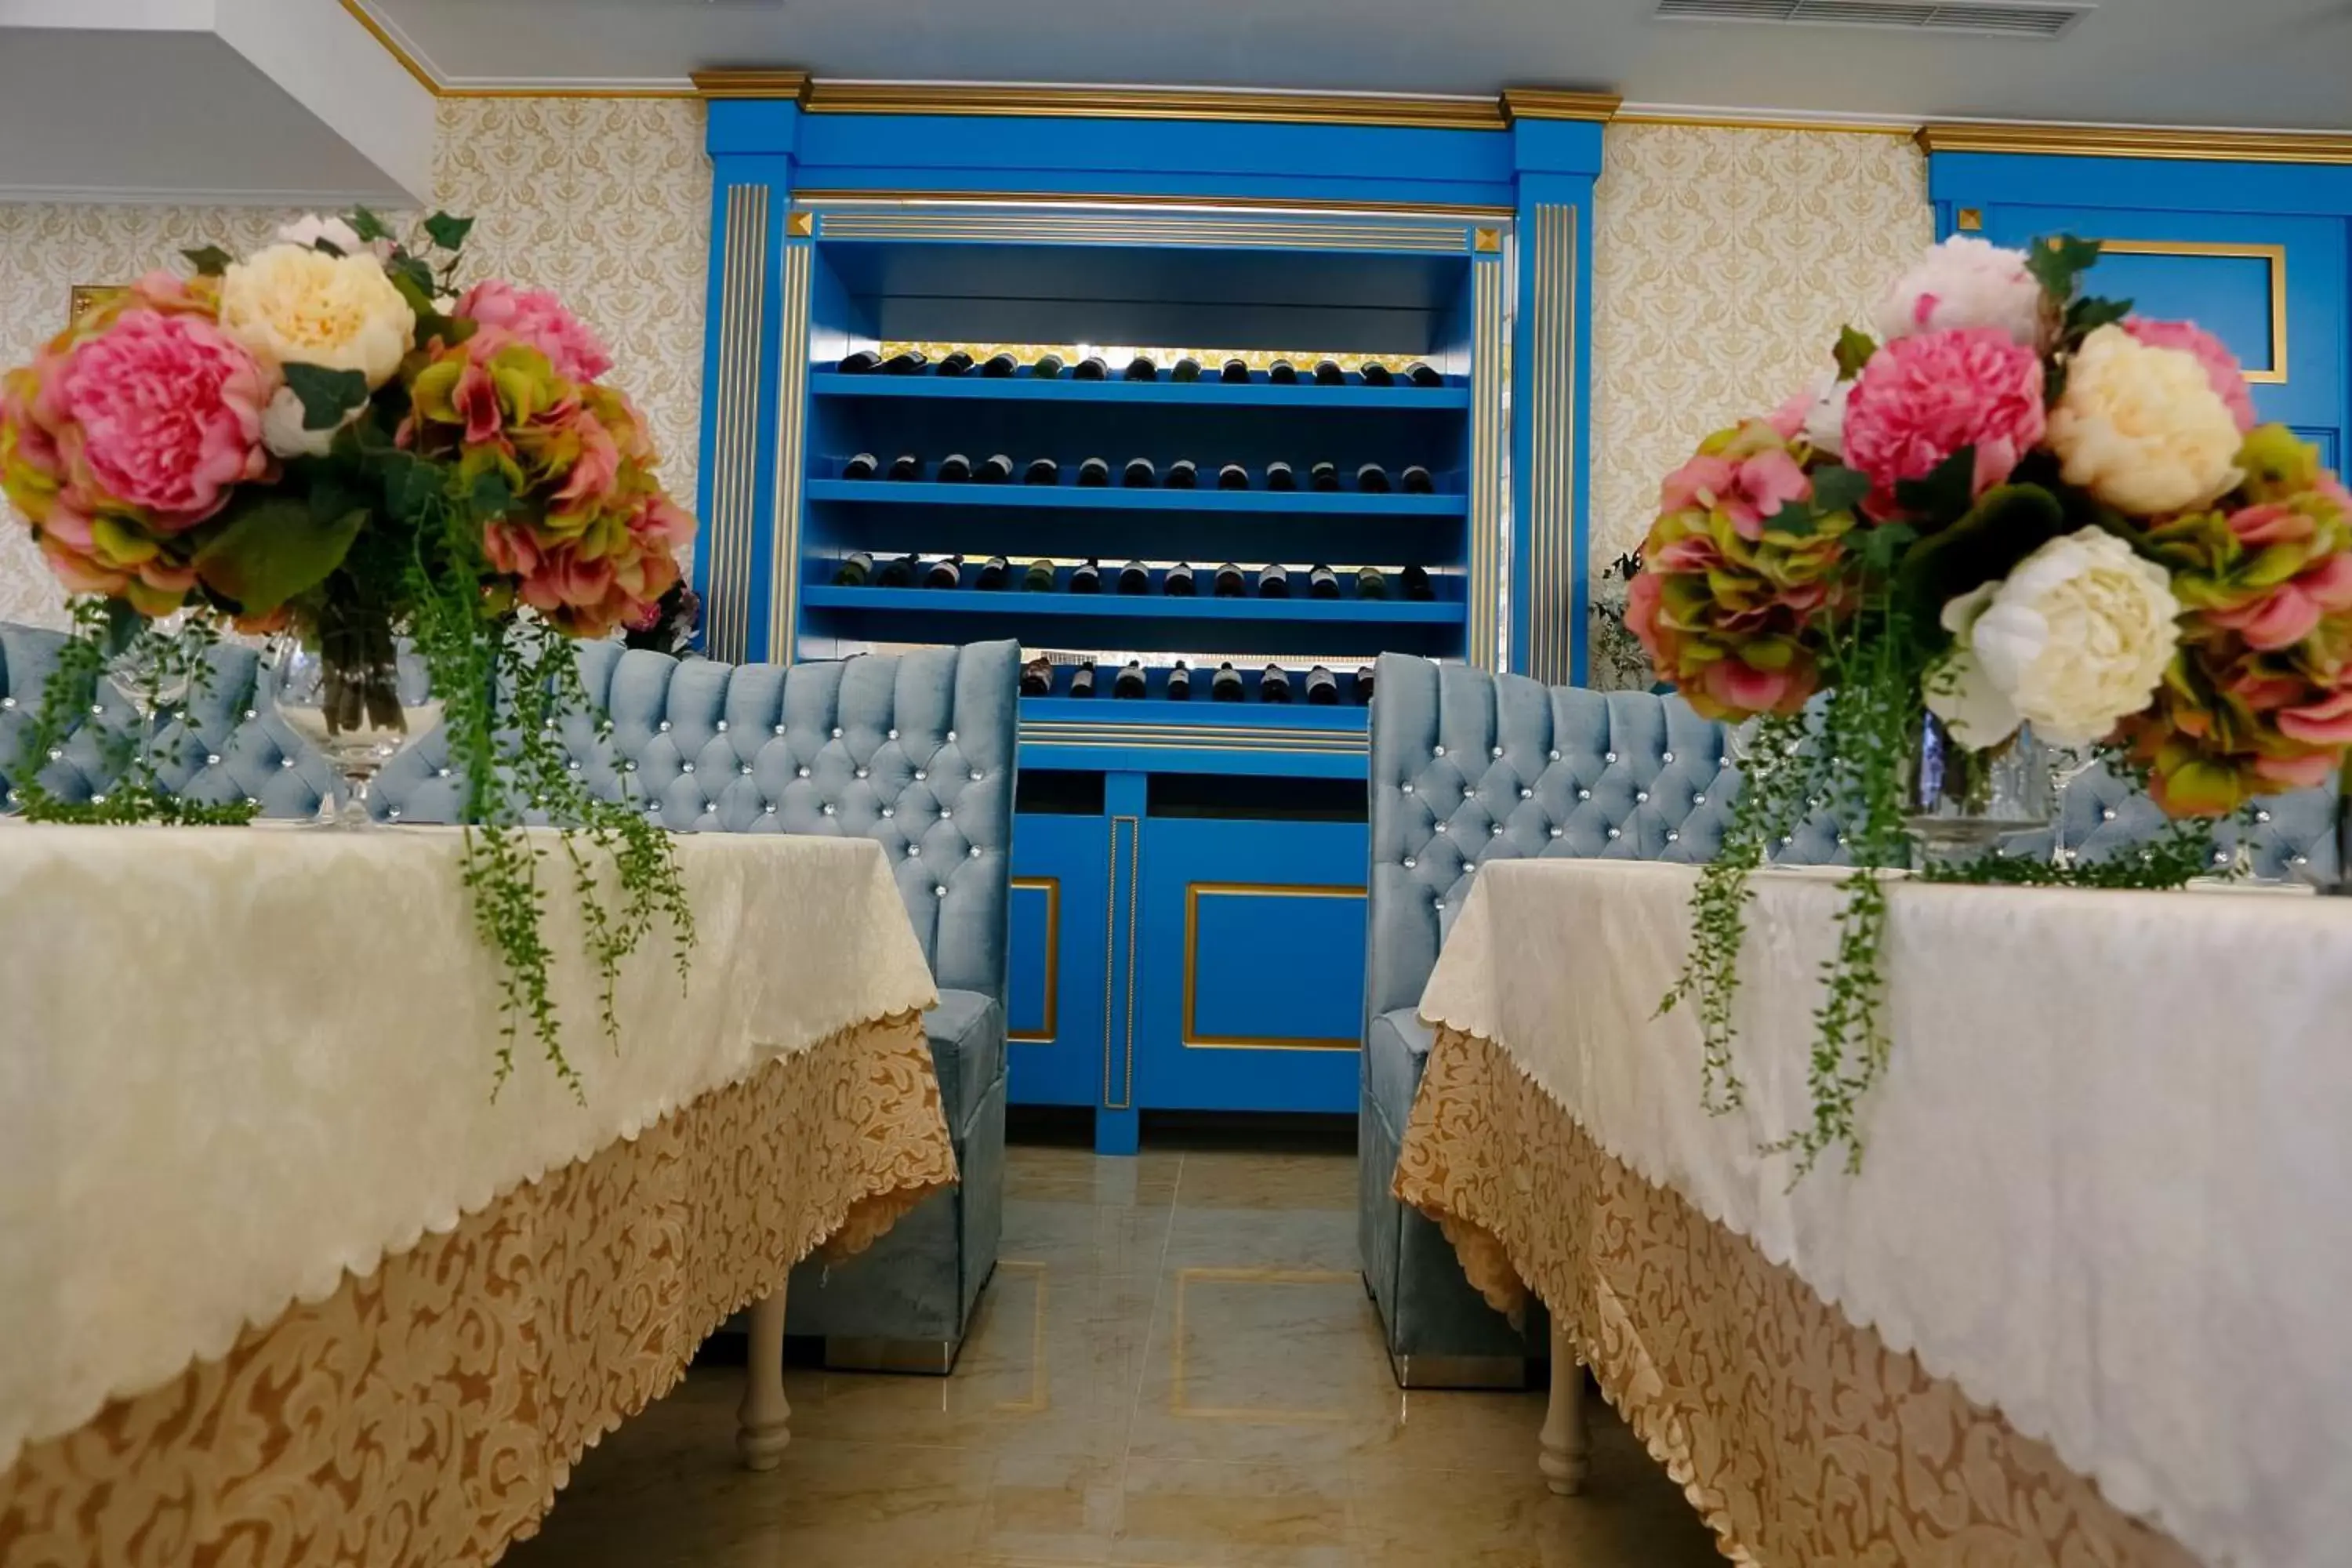 Banquet/Function facilities, Banquet Facilities in Hotel Montecito